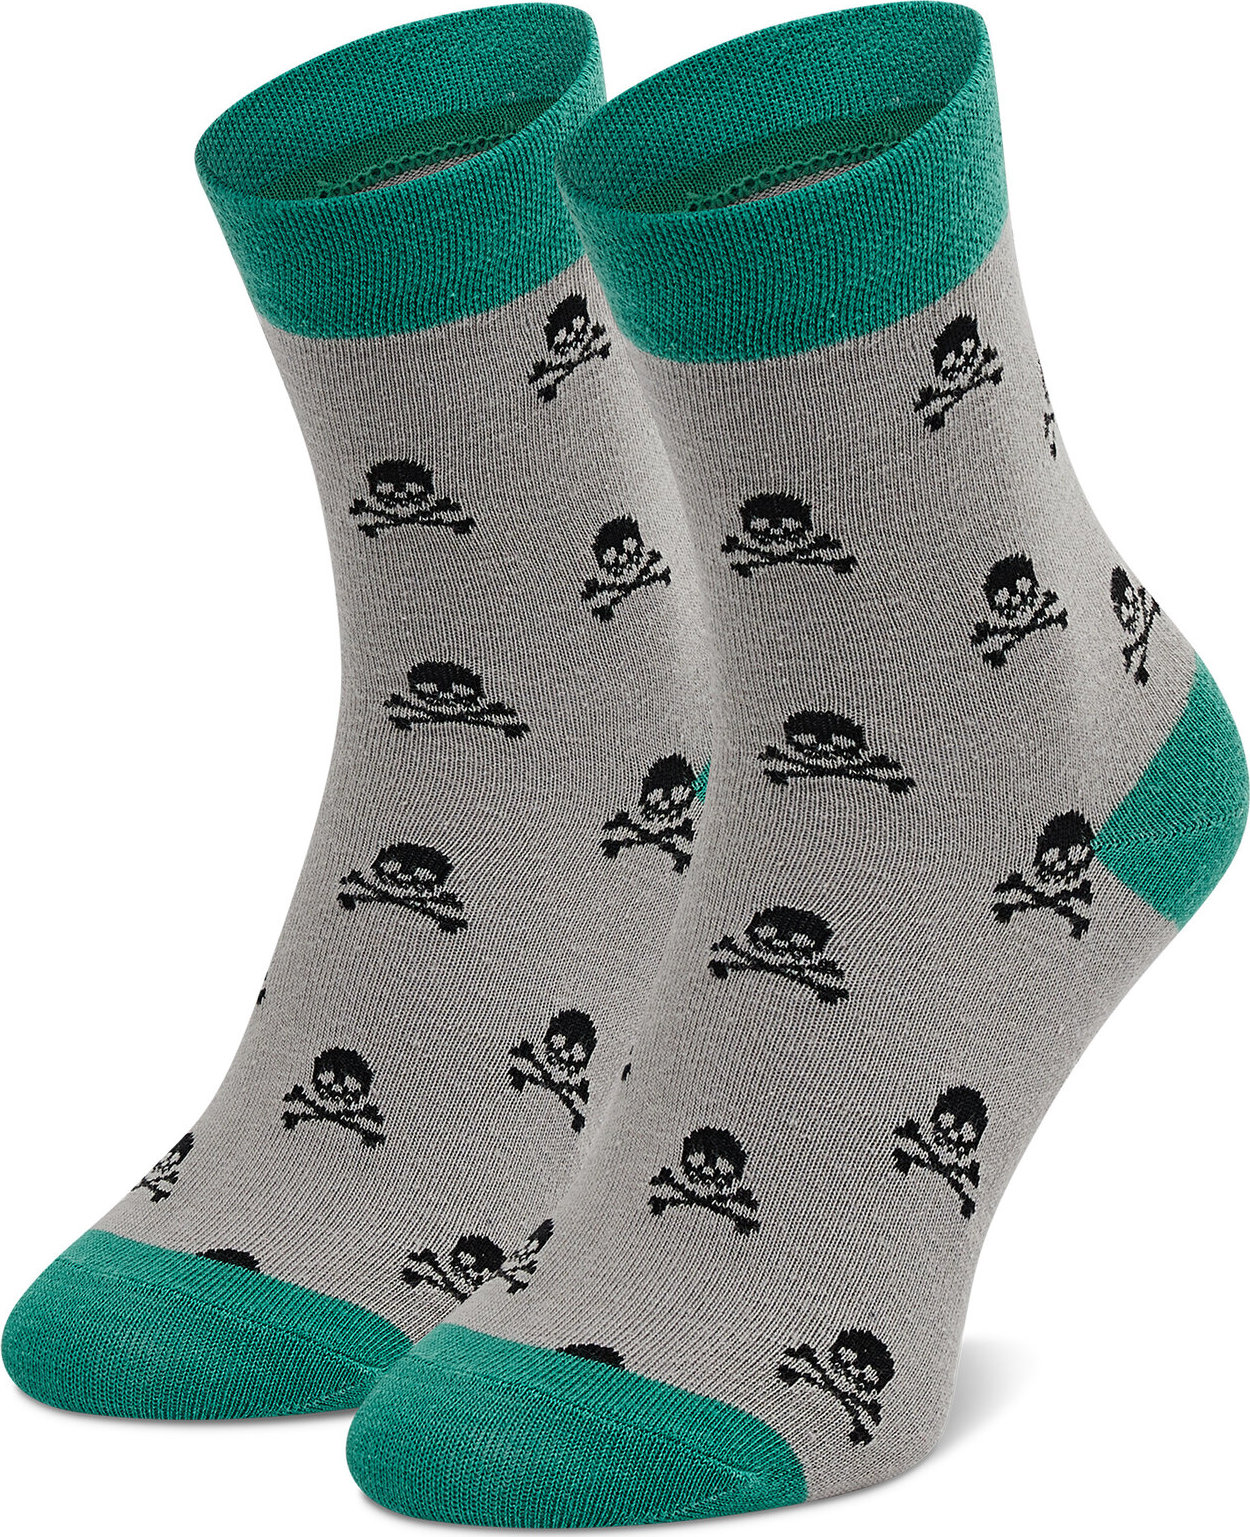 Ponožky Vysoké Unisex Dots Socks SX-414-S Sivá